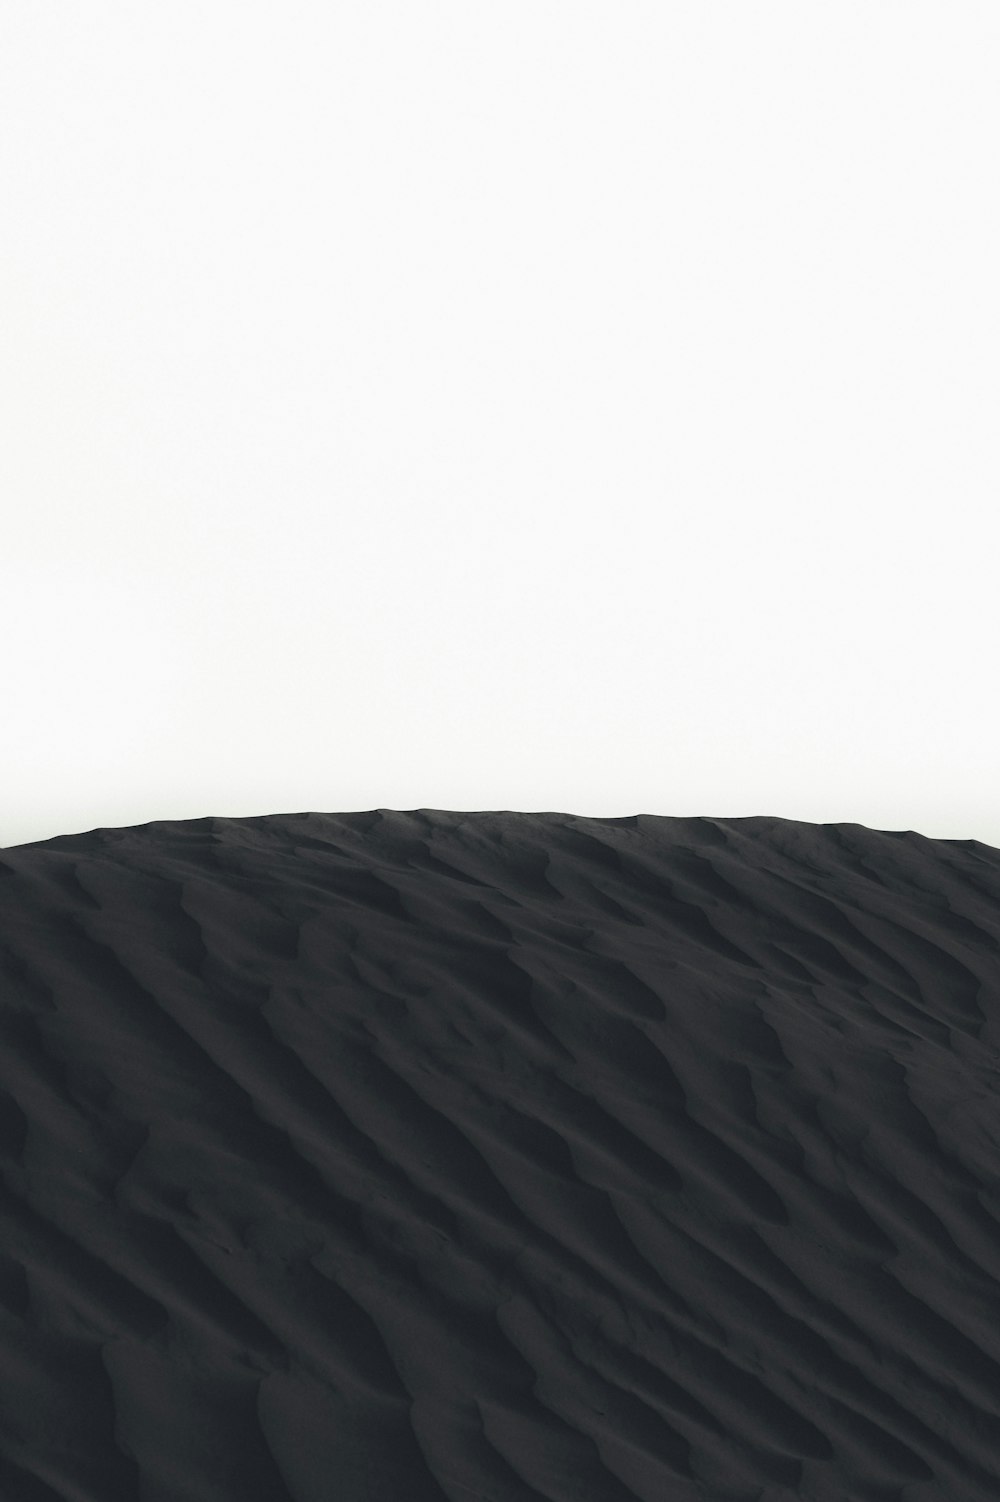 photographie de paysage de dunes de sable